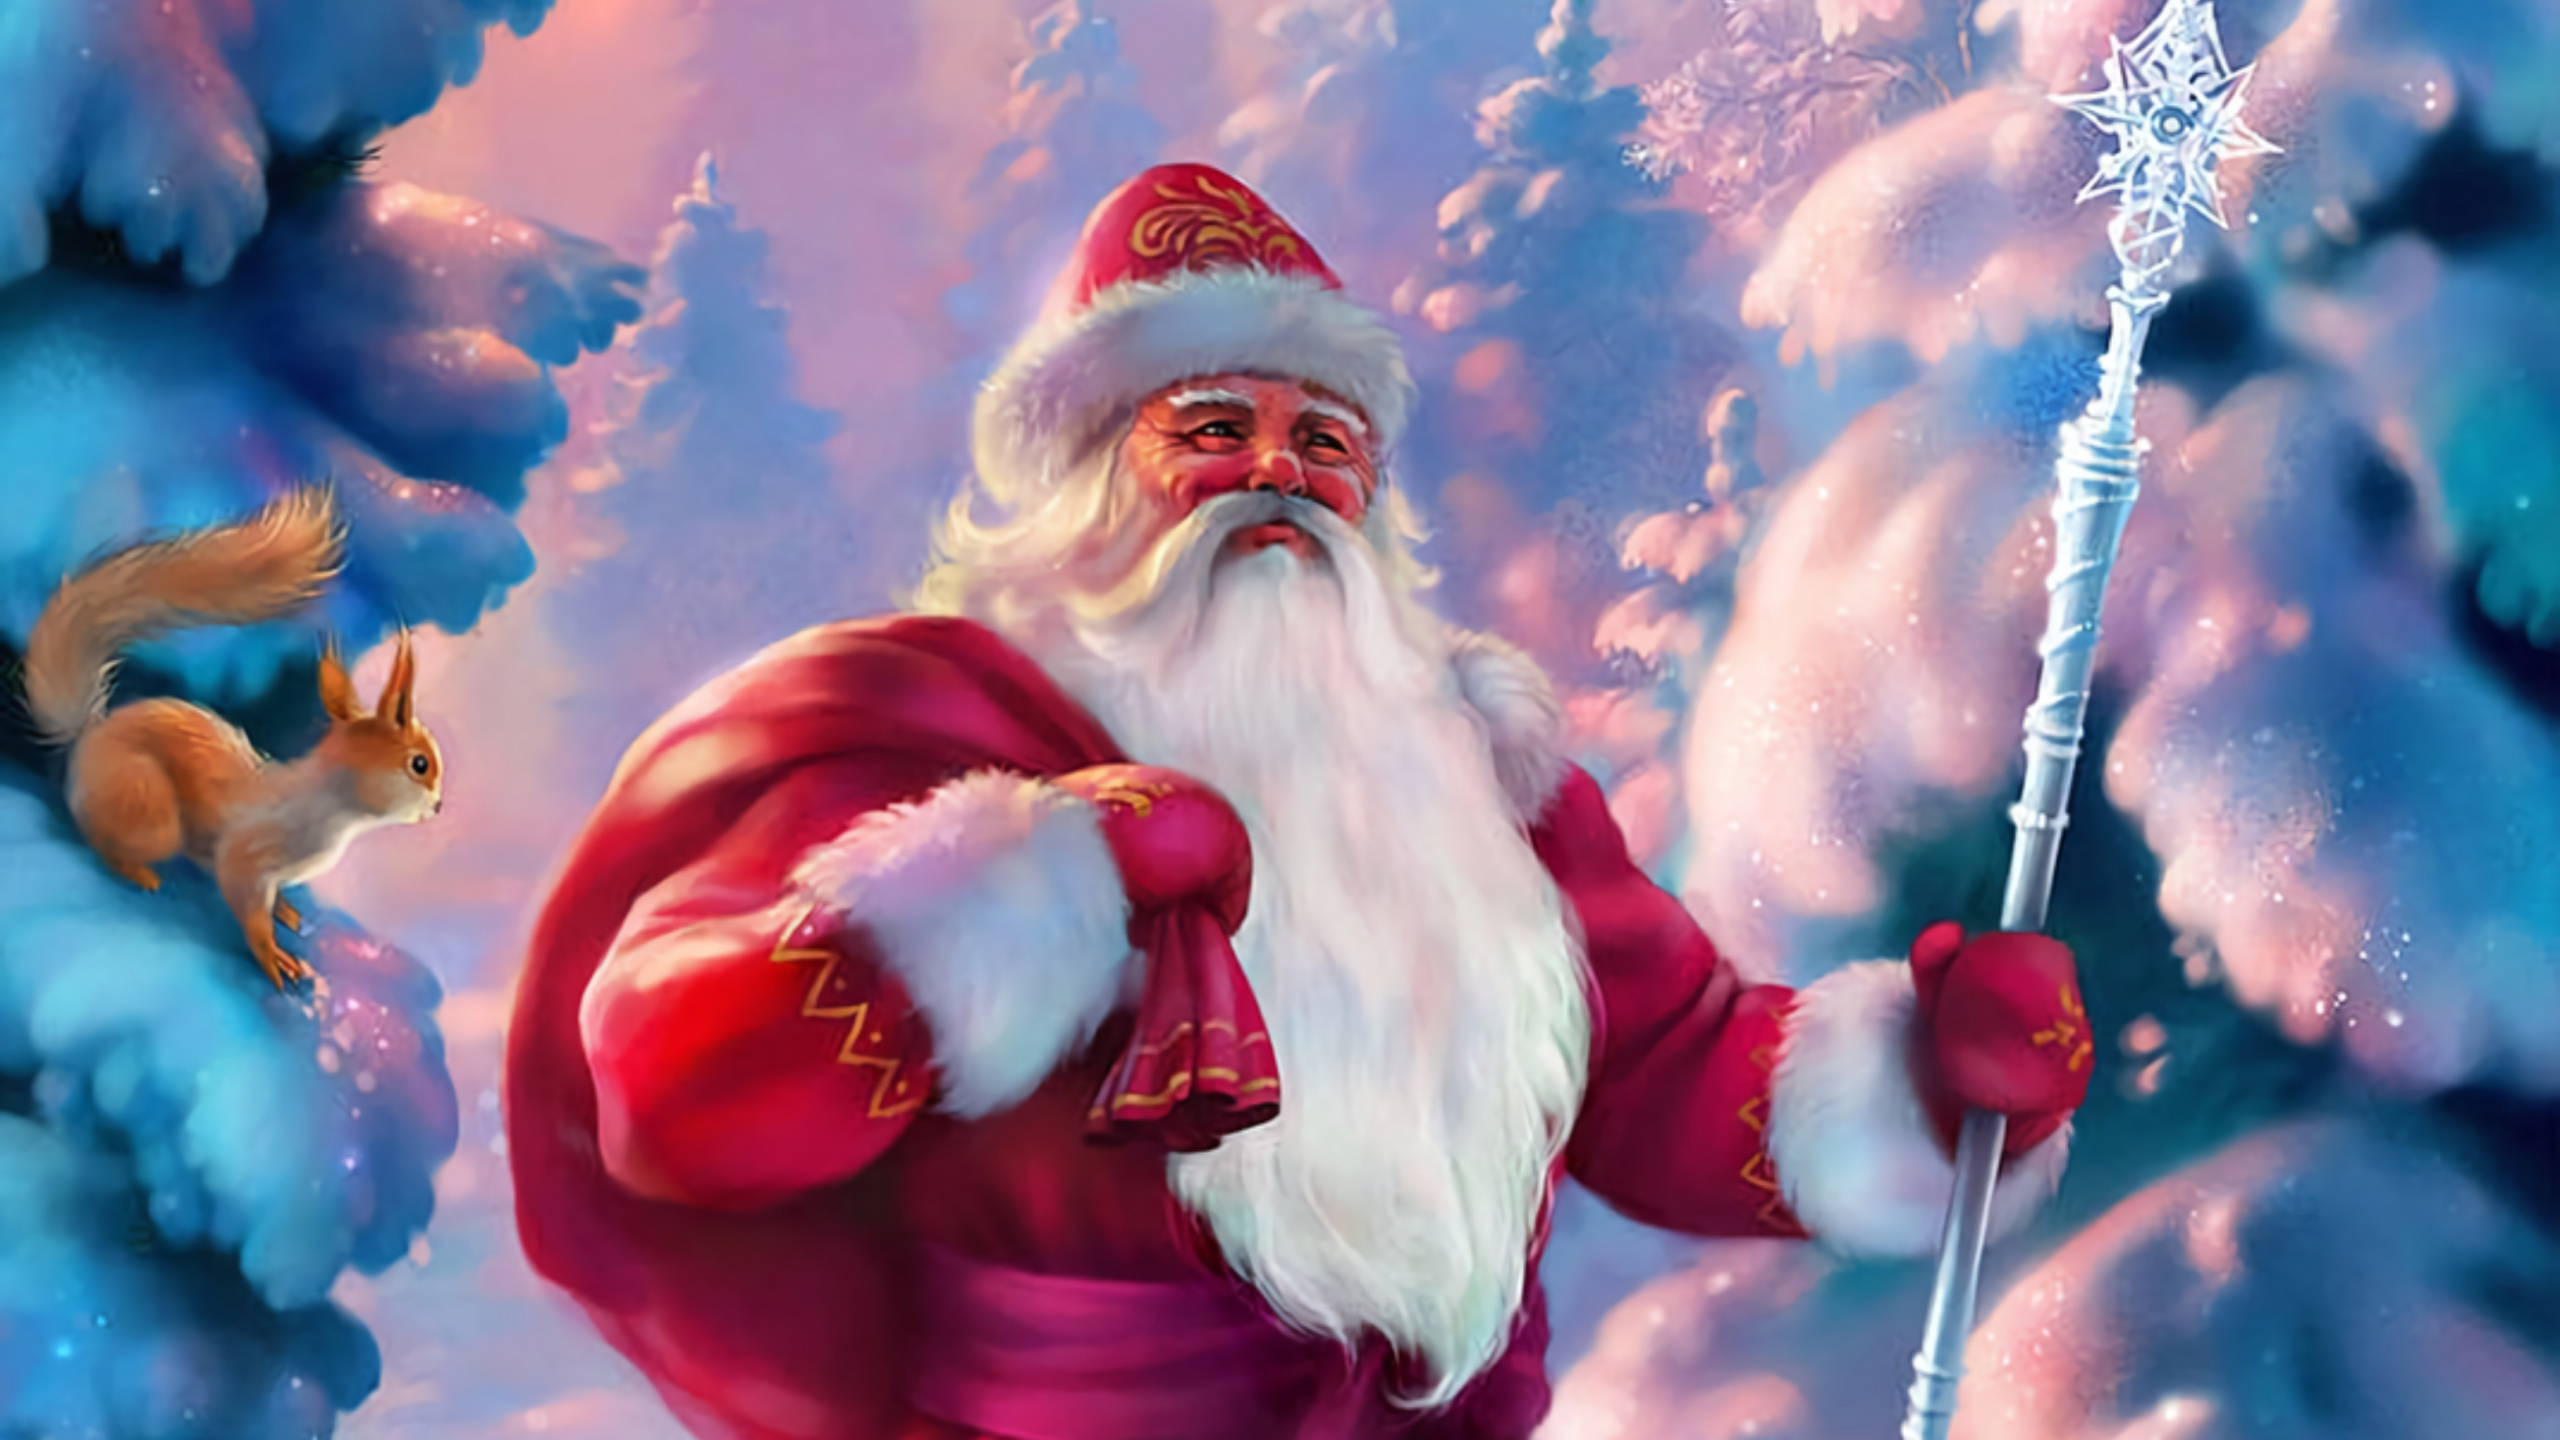 圣诞老人, 副执行主任莫罗兹, 圣诞节那天, 圣诞节, 动画 壁纸 2560x1440 允许